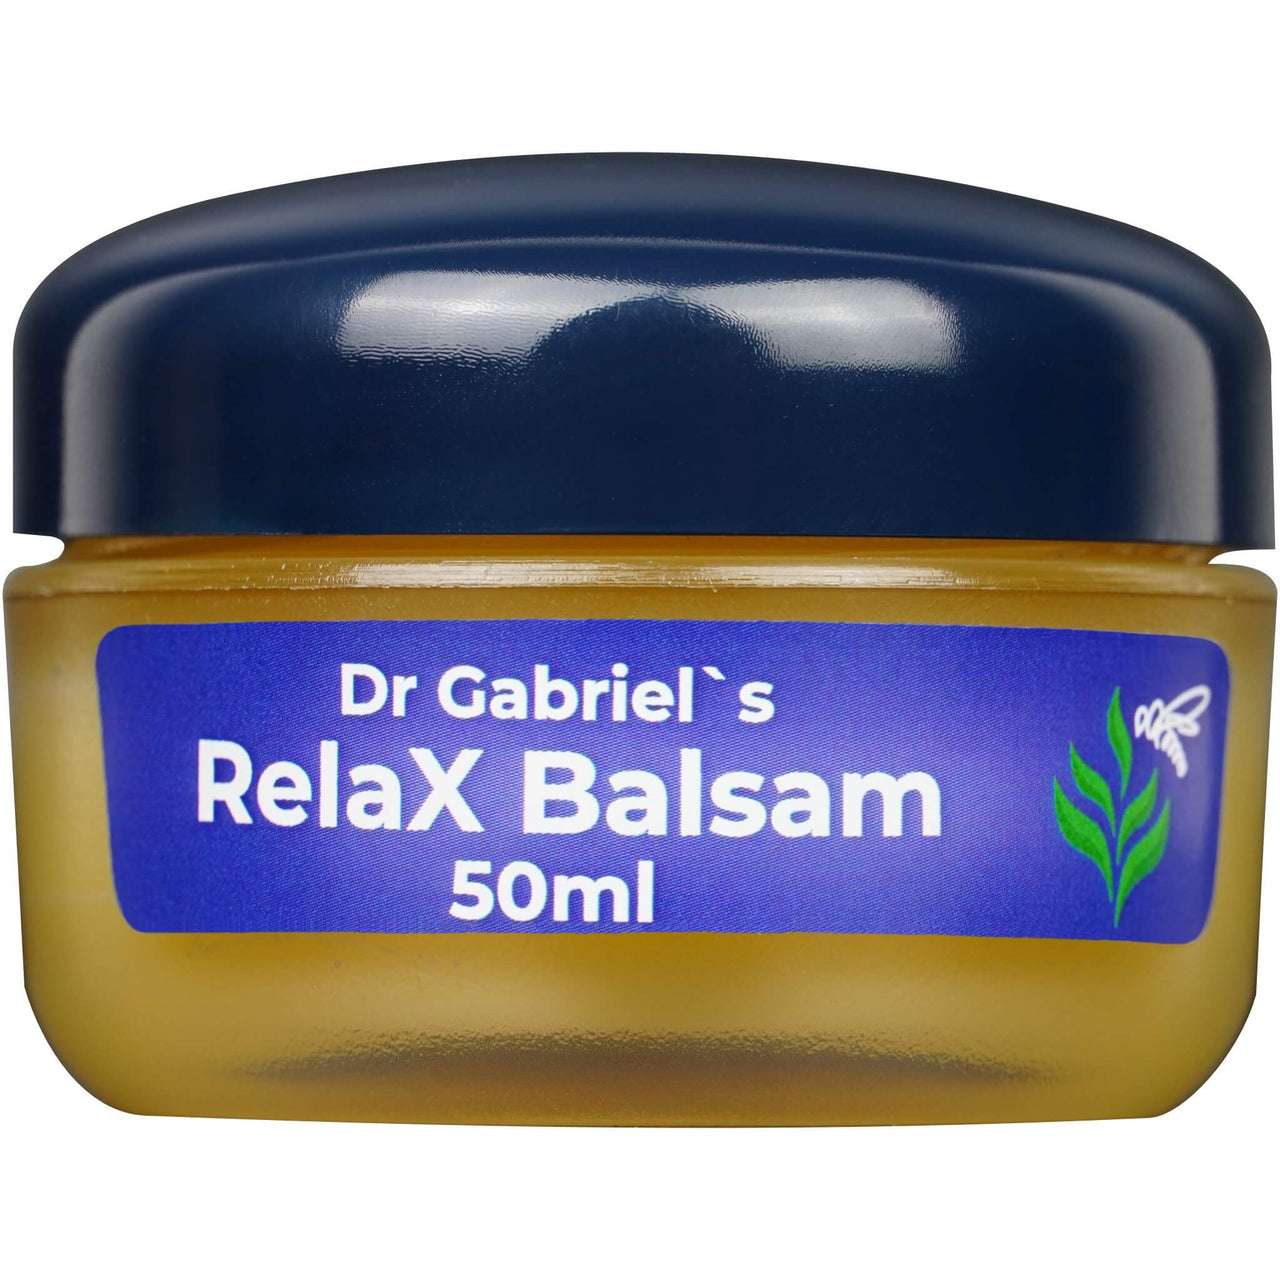 Dr Gabriel's Relax Balsam